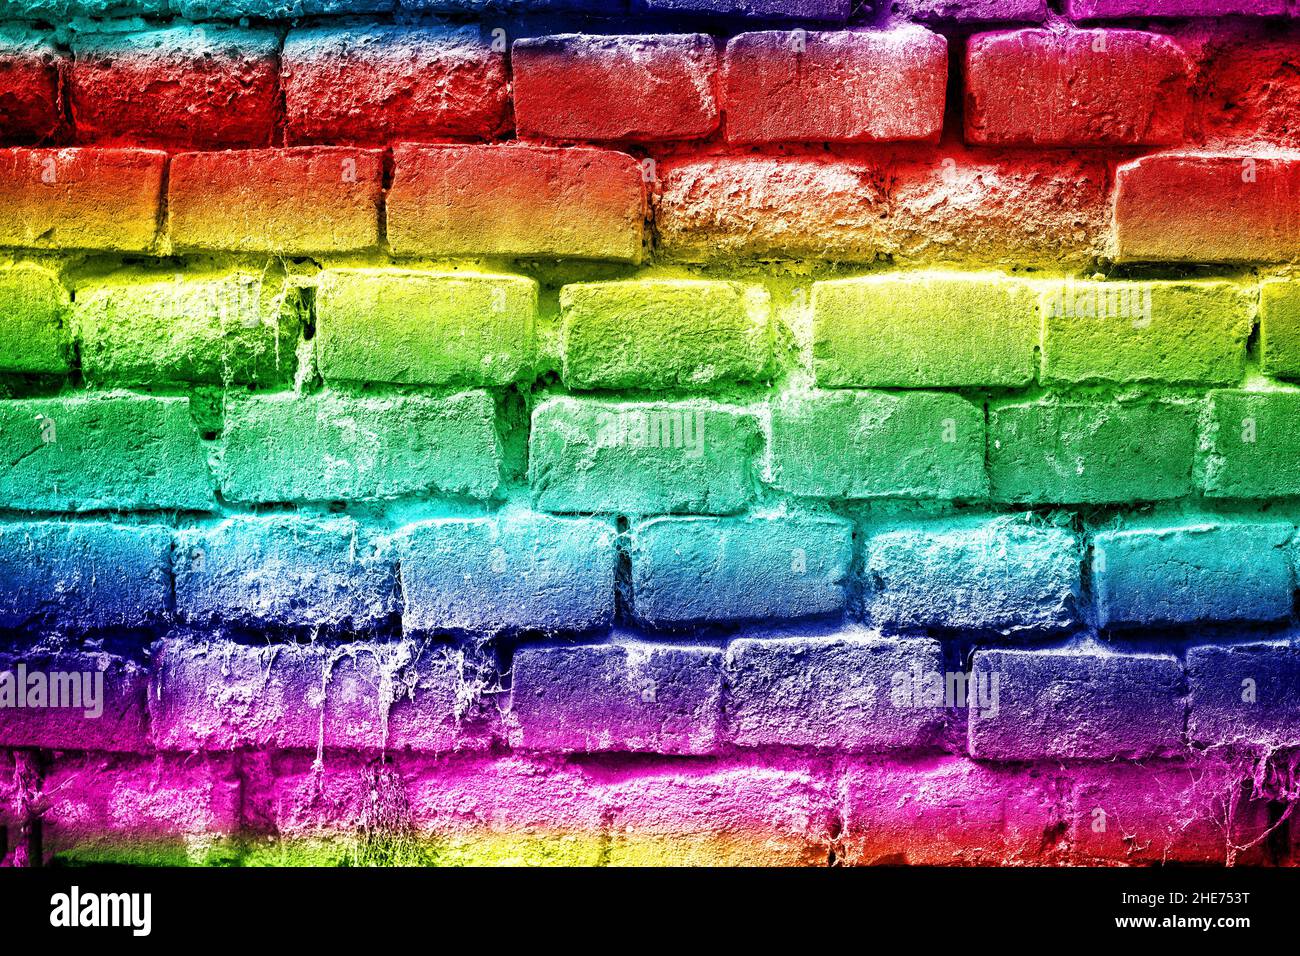 Résumé couleurs arc-en-ciel mur de briques vue d'arrière-plan, rouge, jaune, vert, bleu Banque D'Images